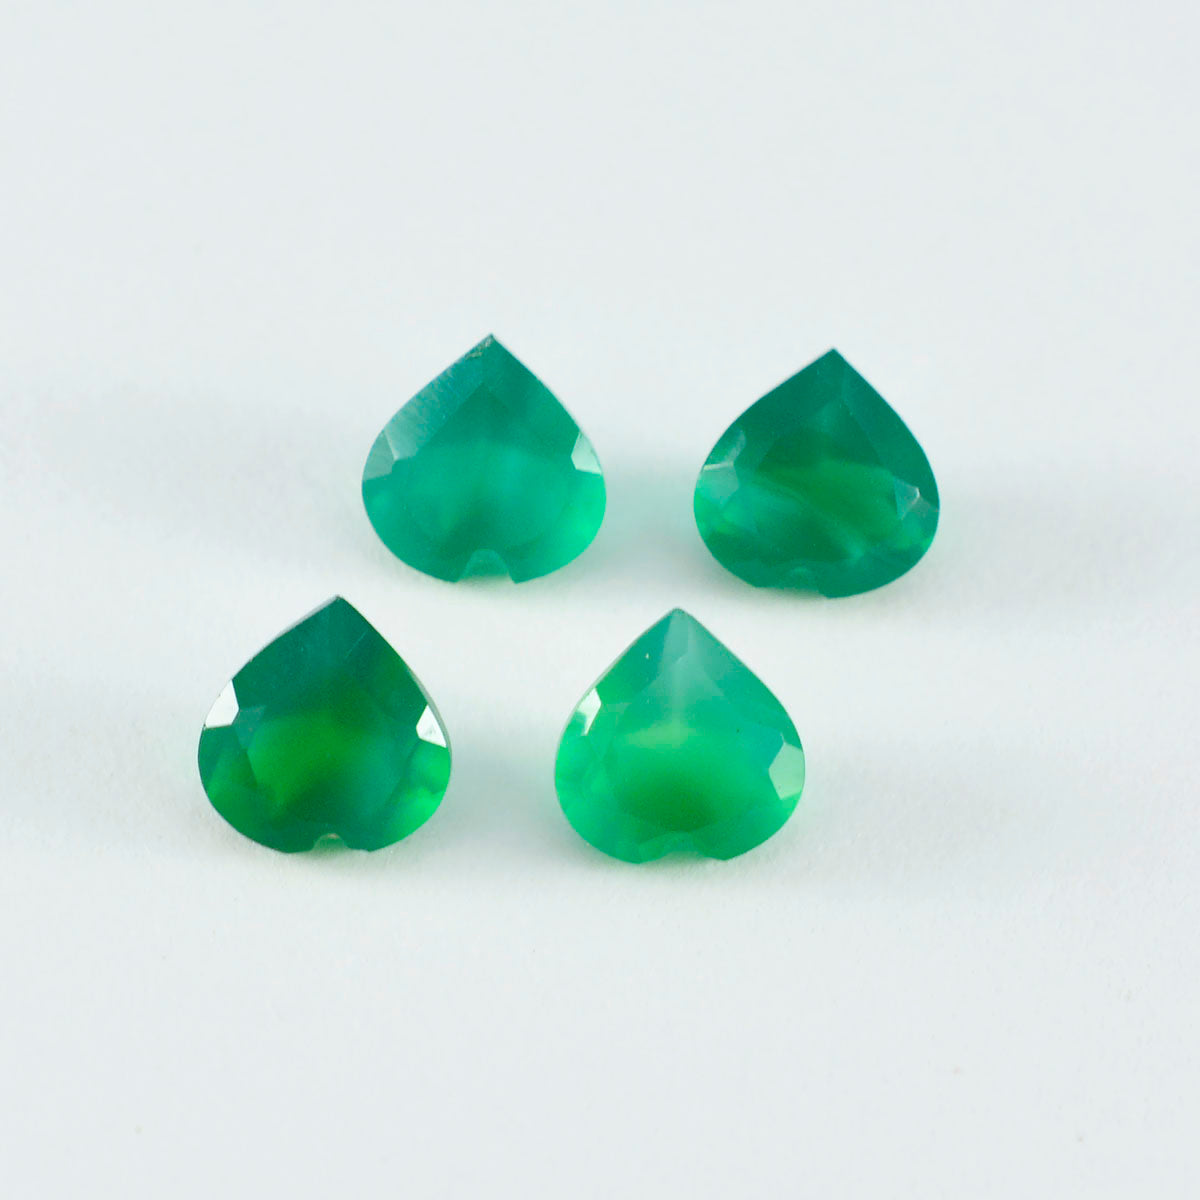 Riyogems 1 Stück natürlicher grüner Onyx, facettiert, 6 x 6 mm, Herzform, hübscher Qualitäts-Edelstein